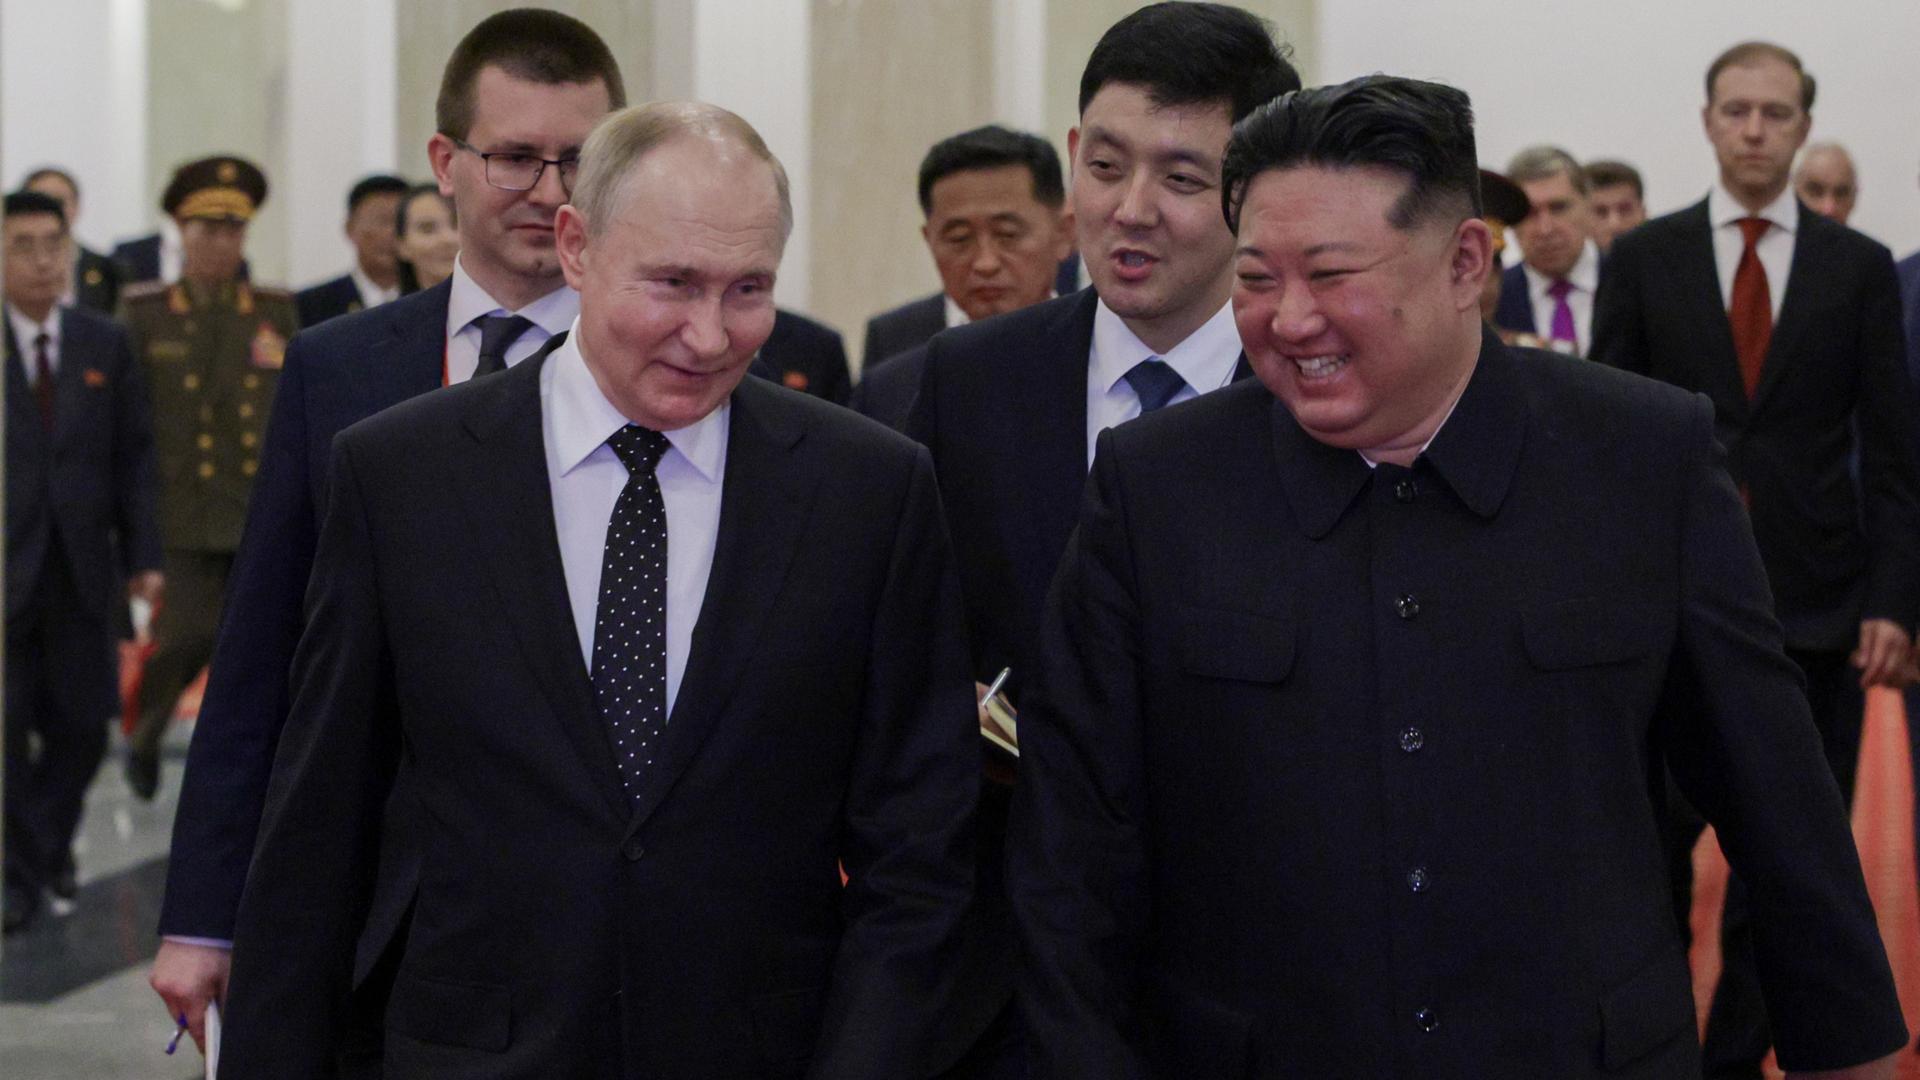 Vladimir Putin und Kim Jong-un bei einem Treffen - sie lächeln beide.